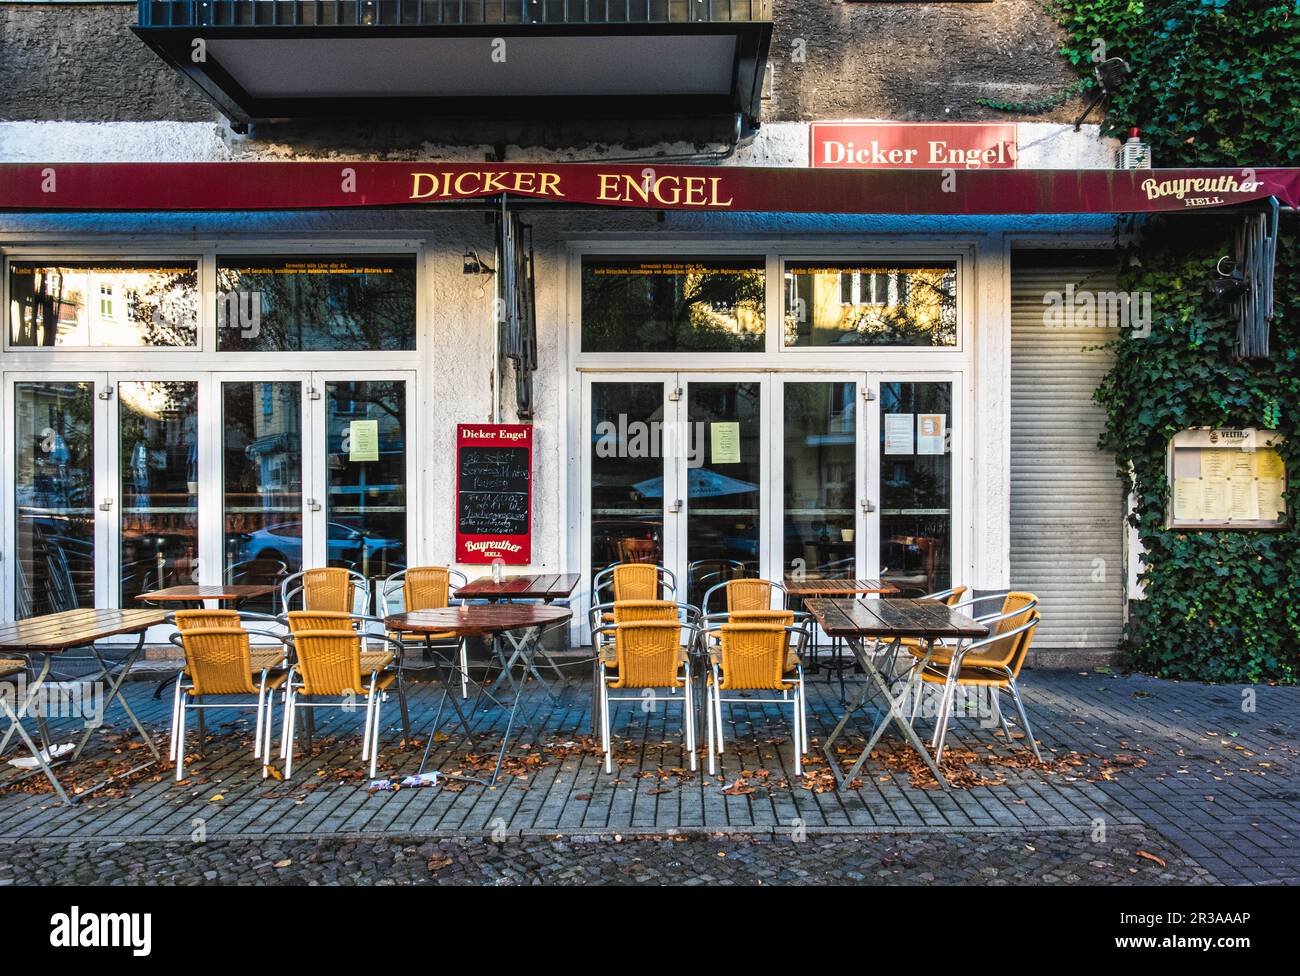 Dicker Engel, ristorante tedesco tradizionale, Birkenstr. 44, Moabit-Mitte, Berlino, Germania Foto Stock